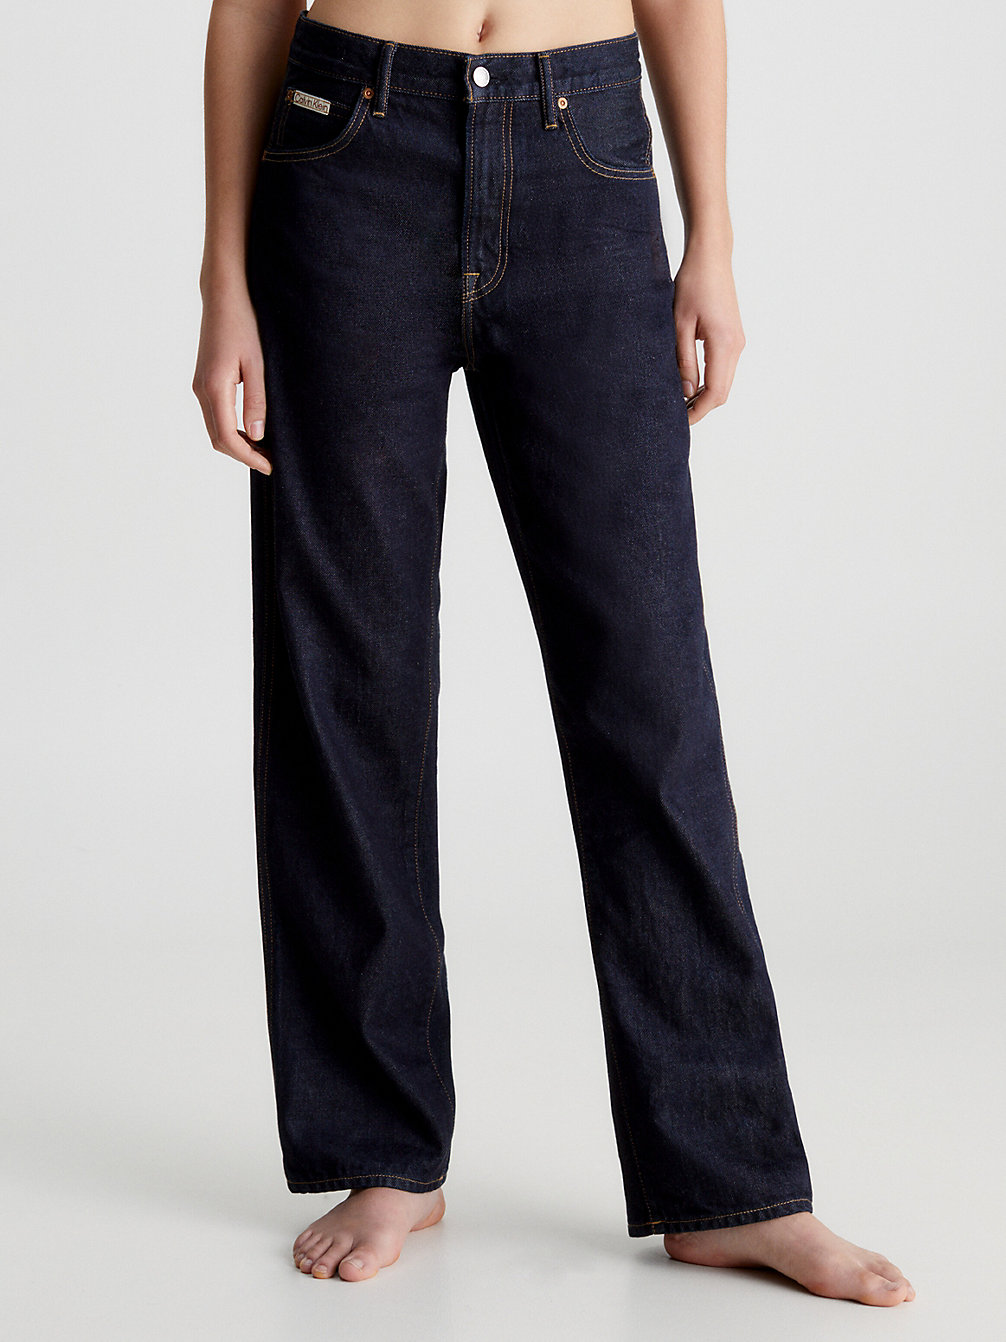 DENIM Unisex Straight Selvedge Jeans – CK Standards undefined Herren Calvin Klein